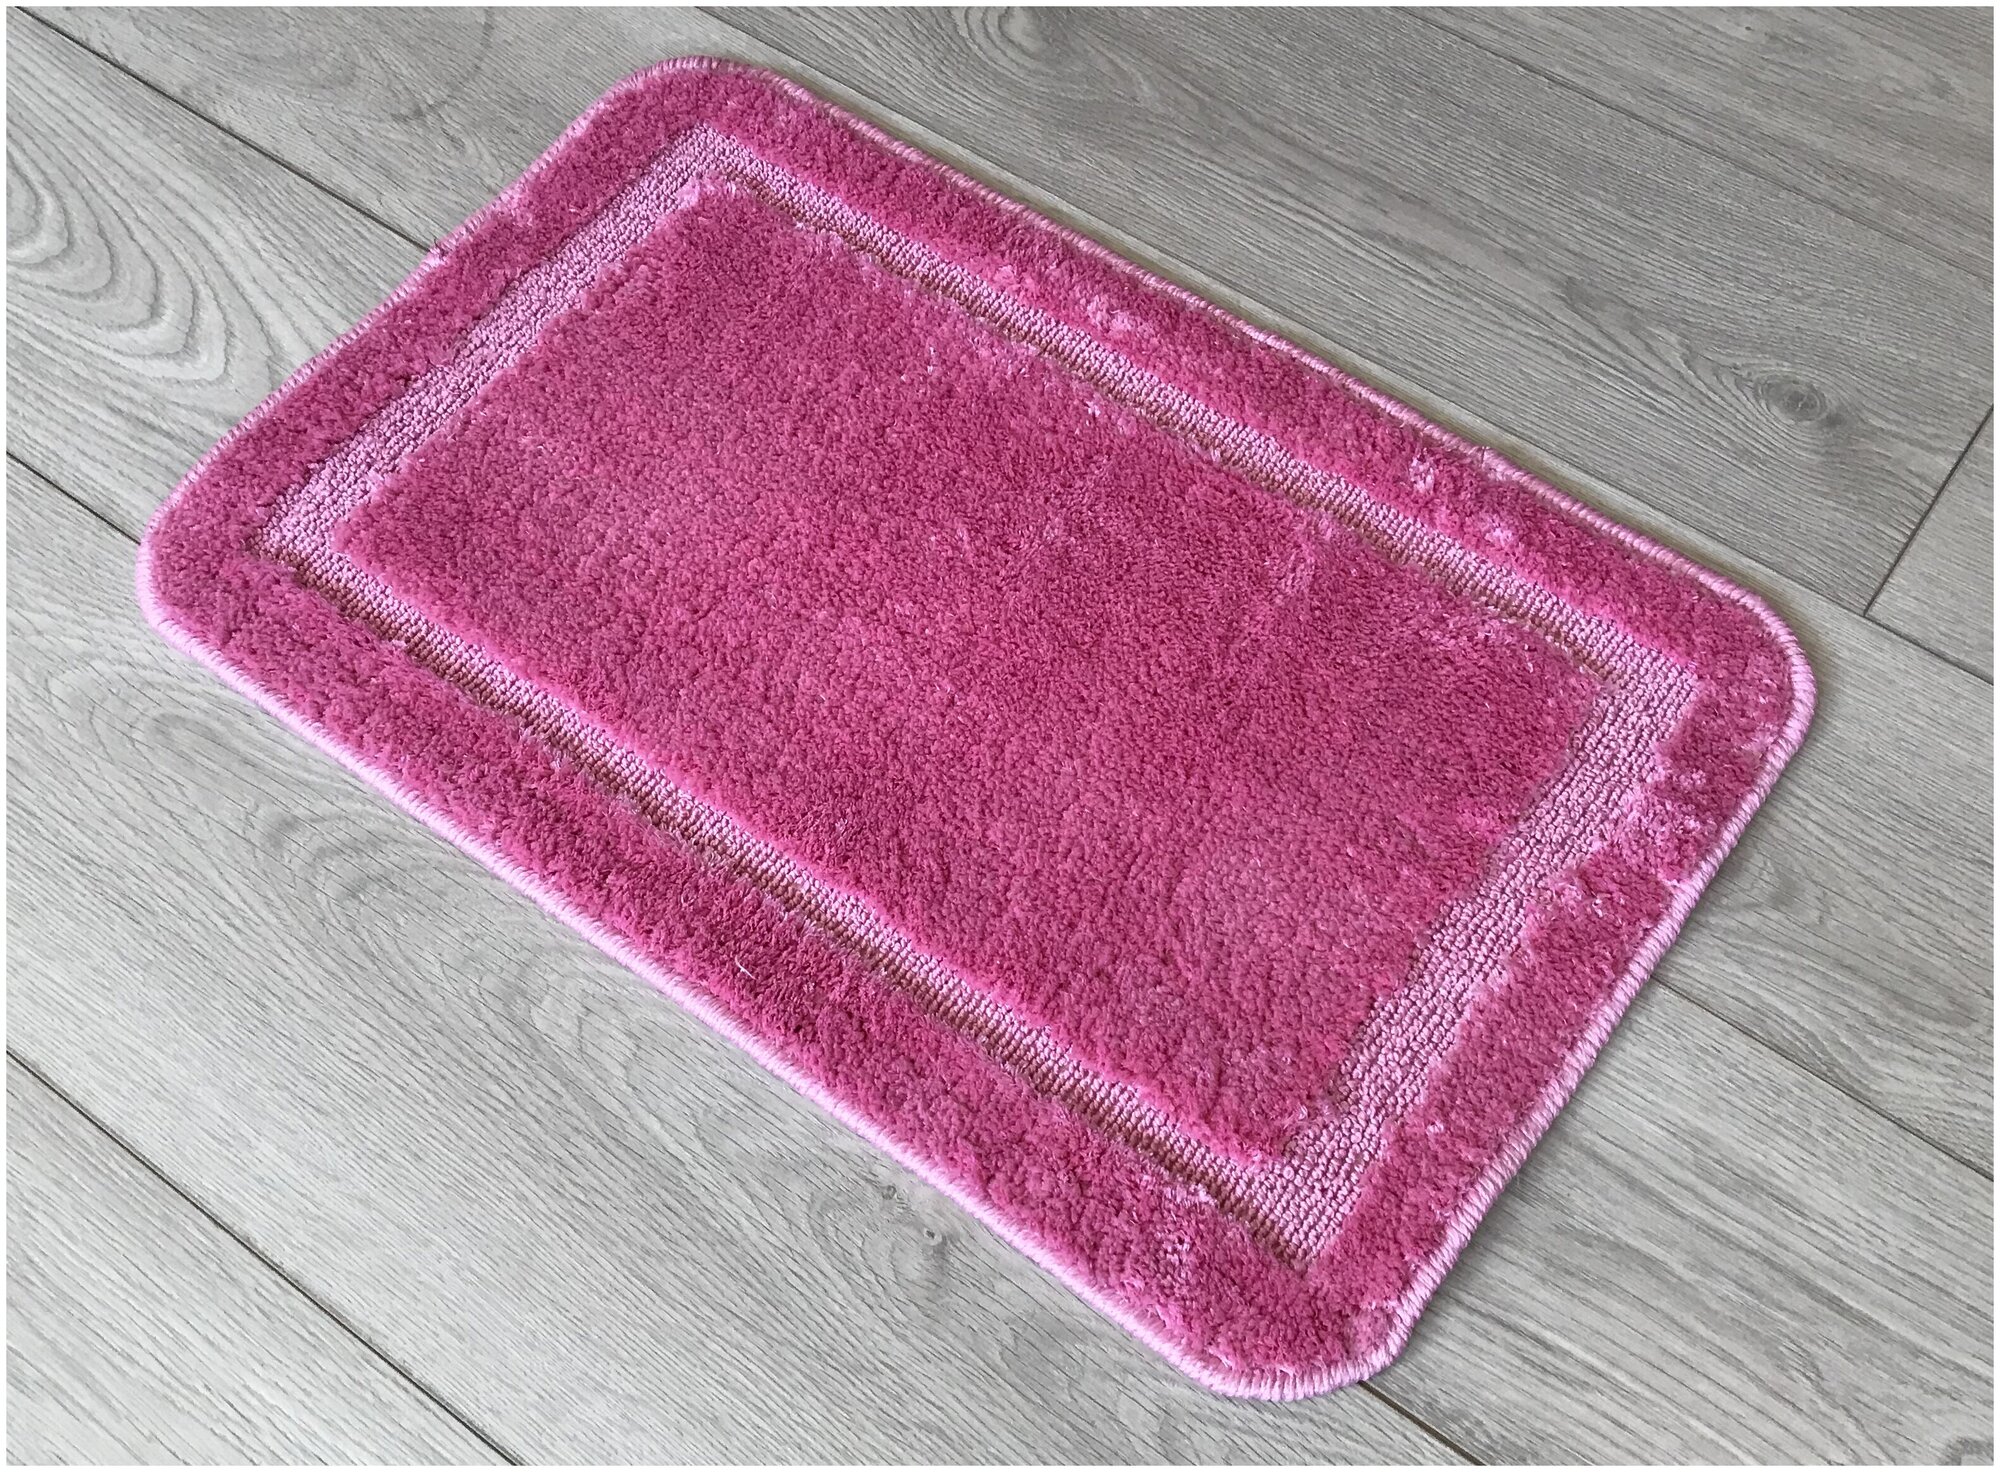 Пушистый коврик на резиновой основе 50х80 см розовый с бордюром Микрофайбер / 11676-005